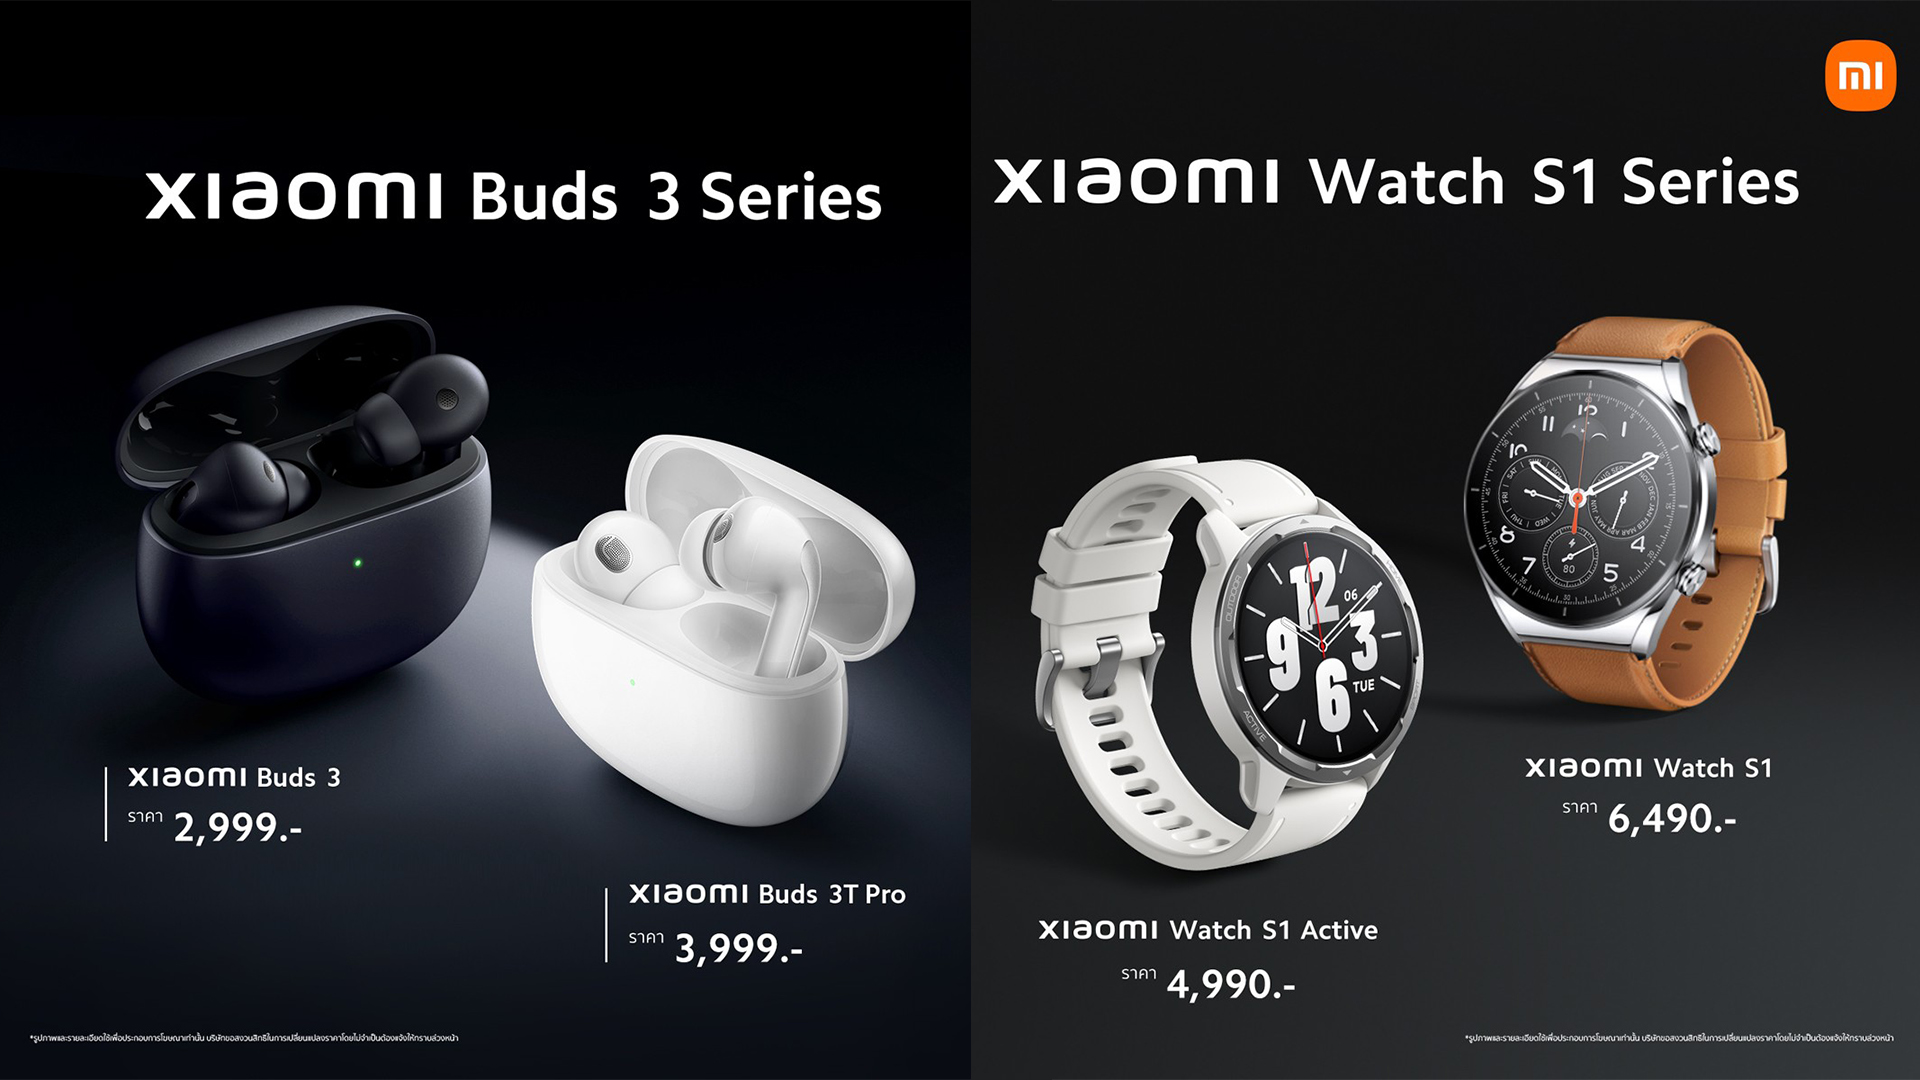 เปิดตัว Xiaomi Watch S1 และหูฟัง Xiaomi Buds 3 Series ถึงอย่างละ 2 รุ่น กับราคาที่ High-End มากขึ้น